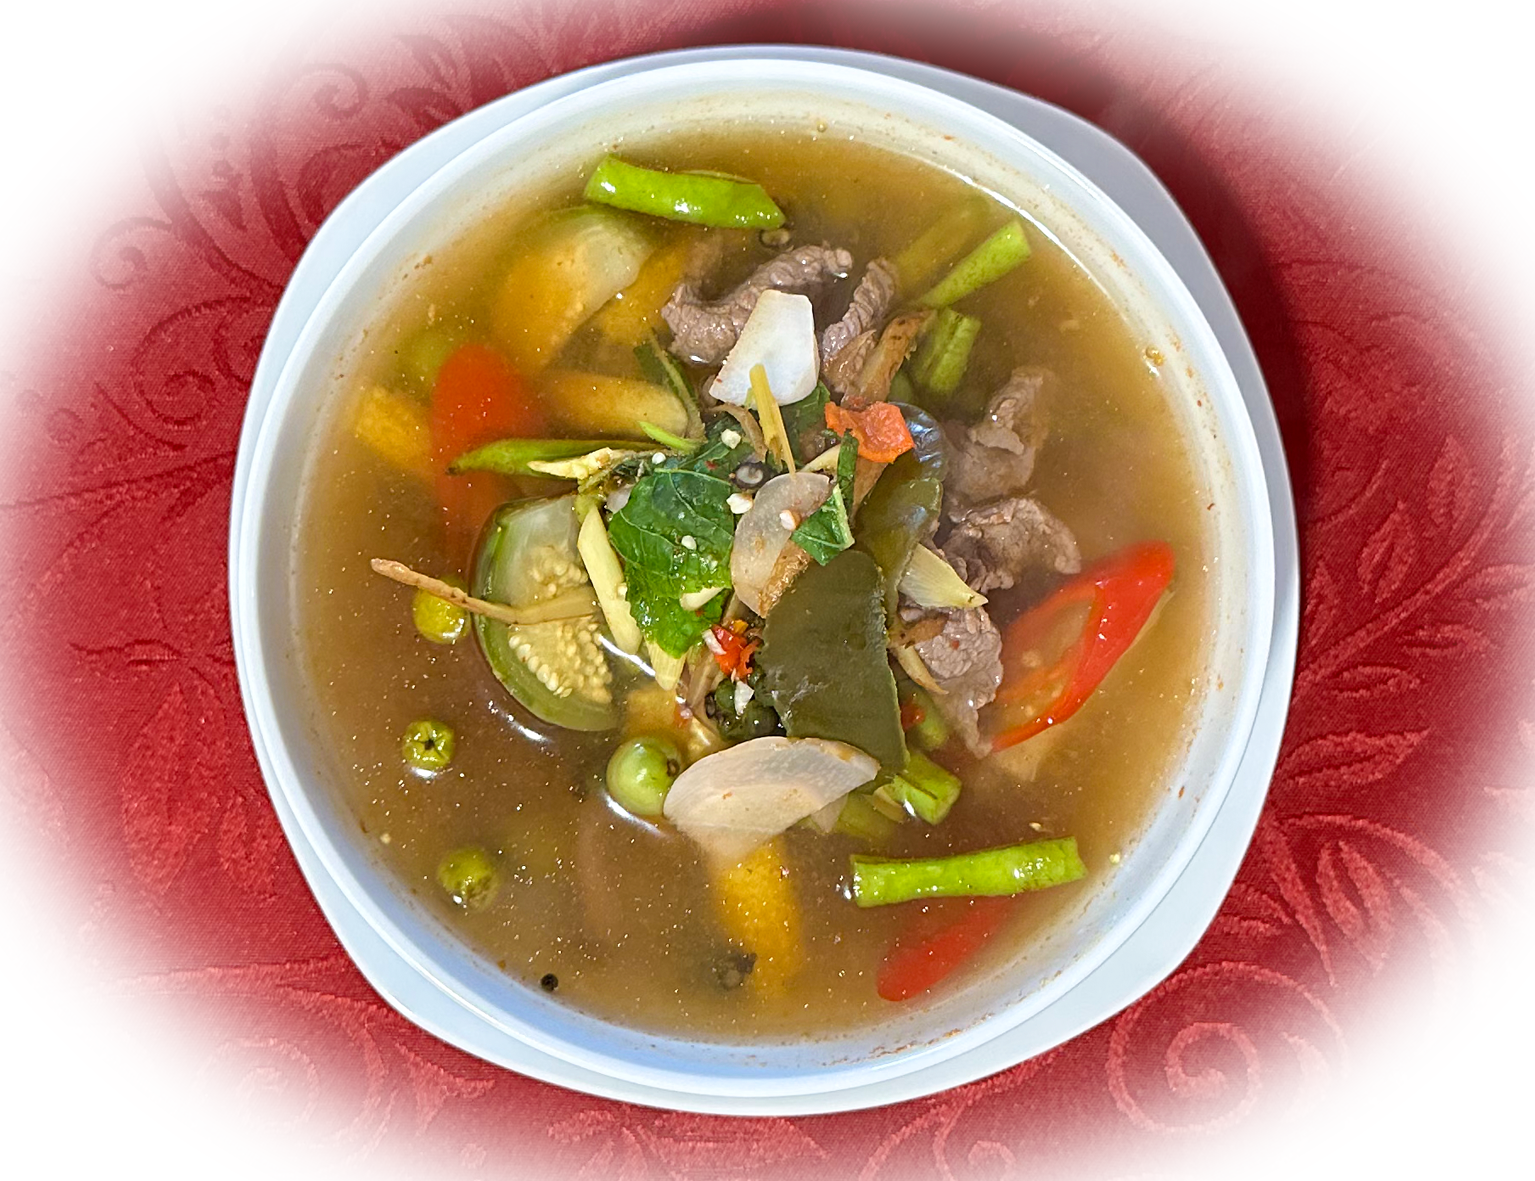 Kaeng Pha, auch bekannt als Thai Jungle Curry, ist ein aromatisches und würziges thailändisches Curr